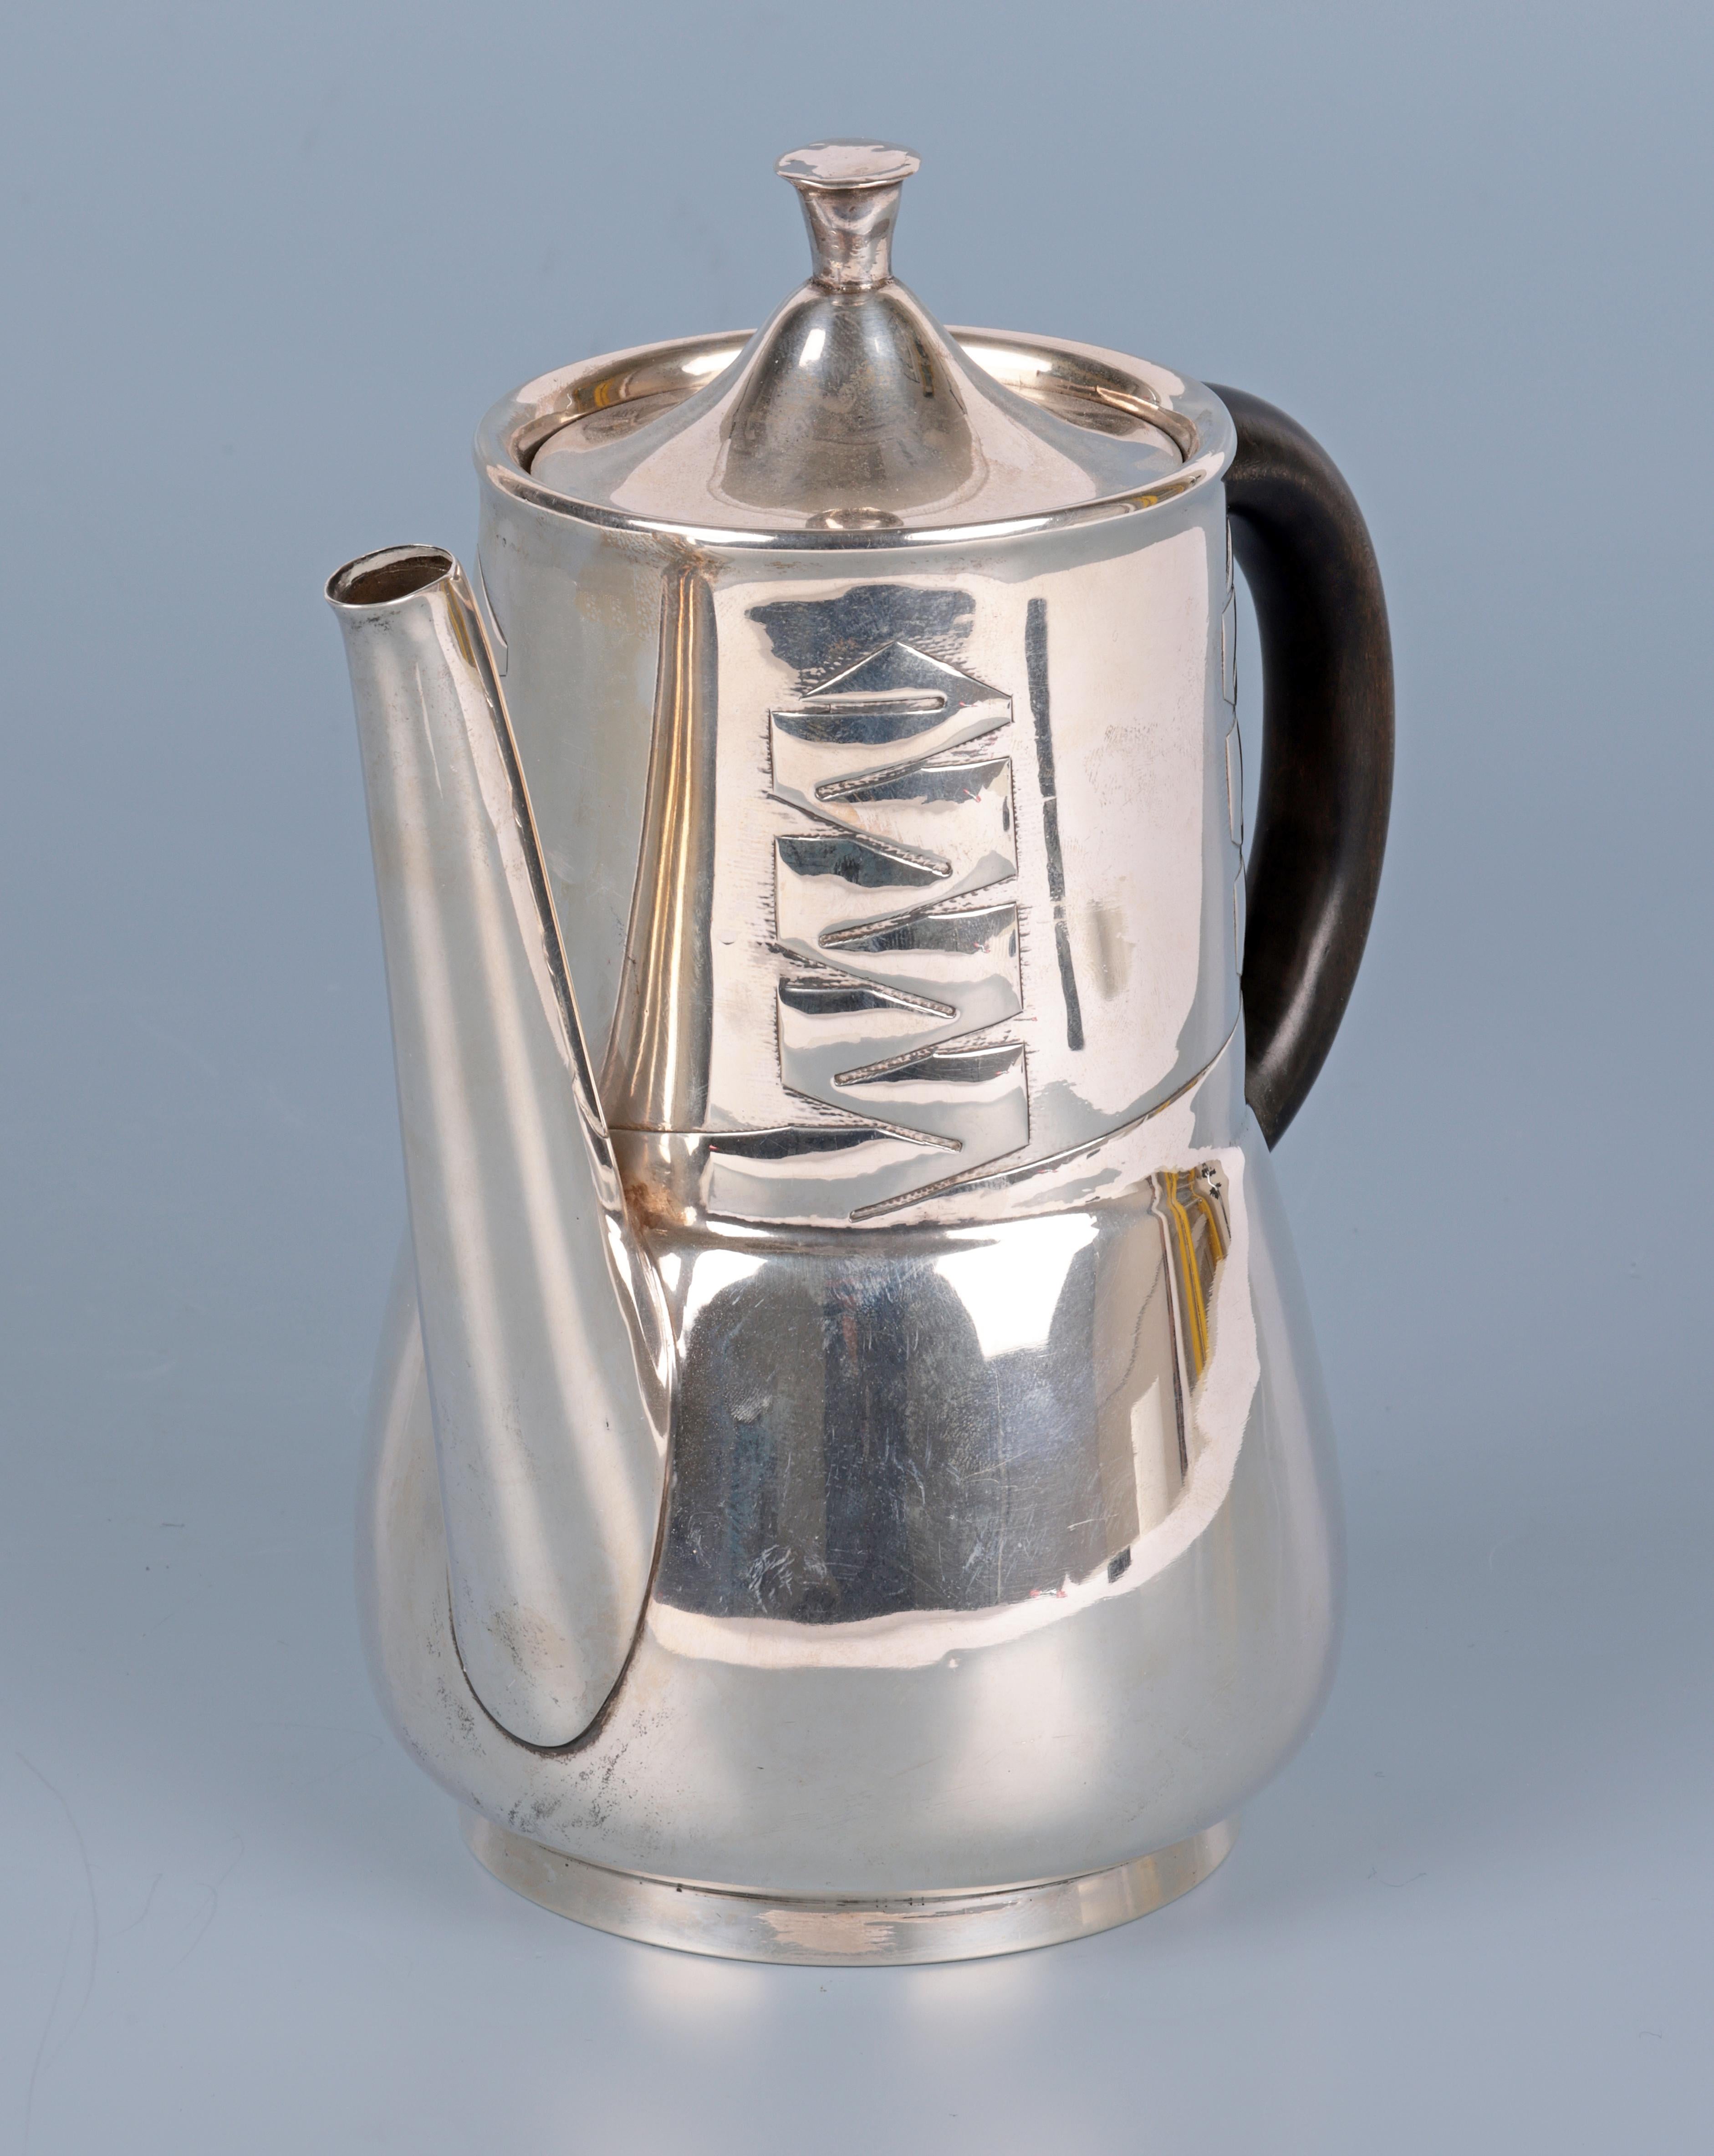  Archibald Knox Liberty & Co Silver Art Nouveau Silver Teapot For Sale 1